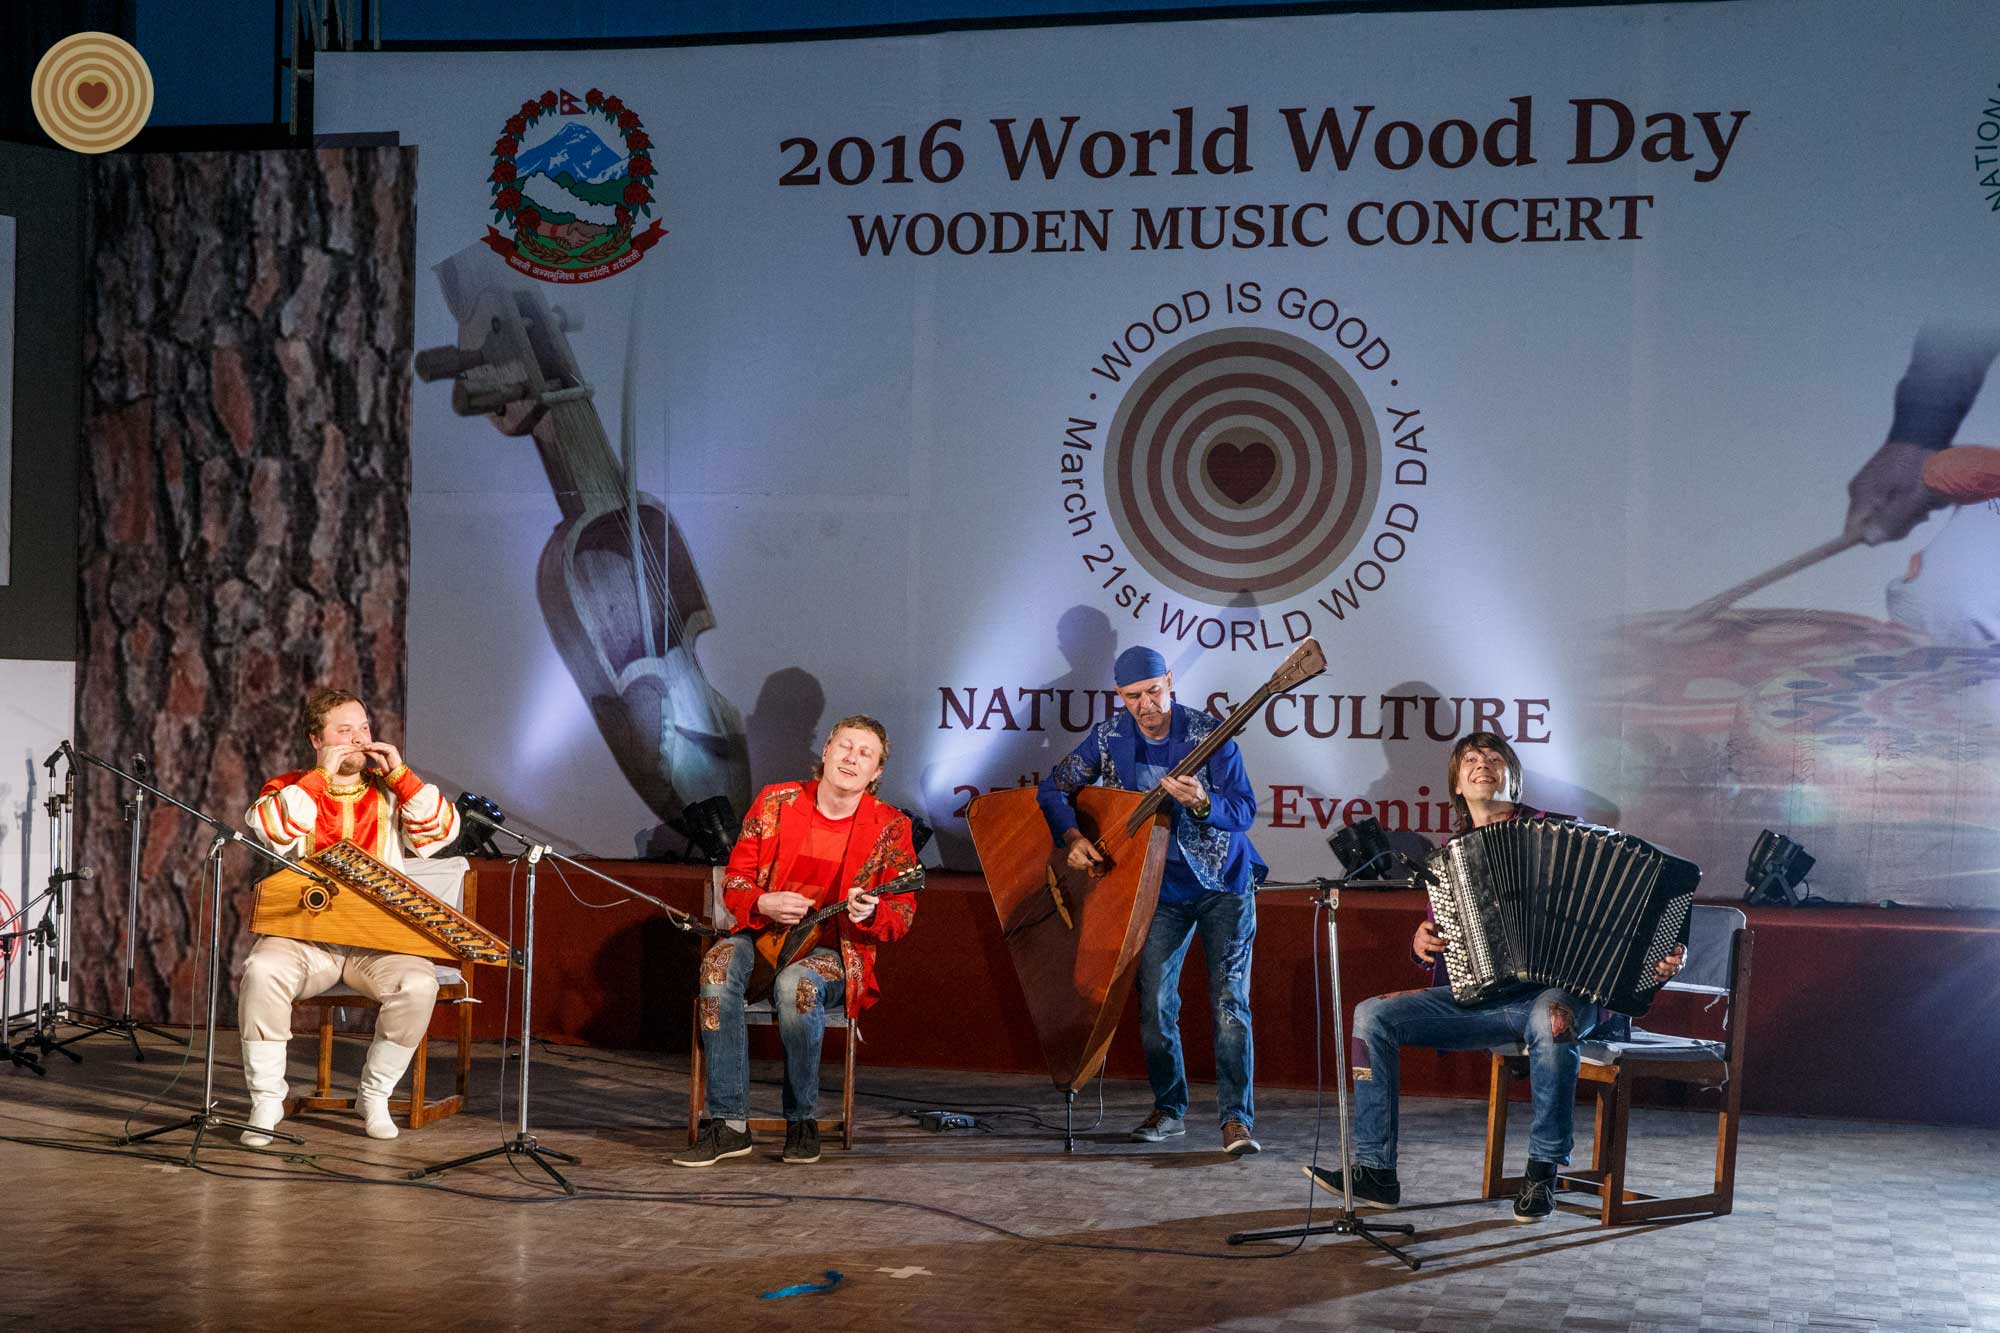 2016 WWD, concert, music